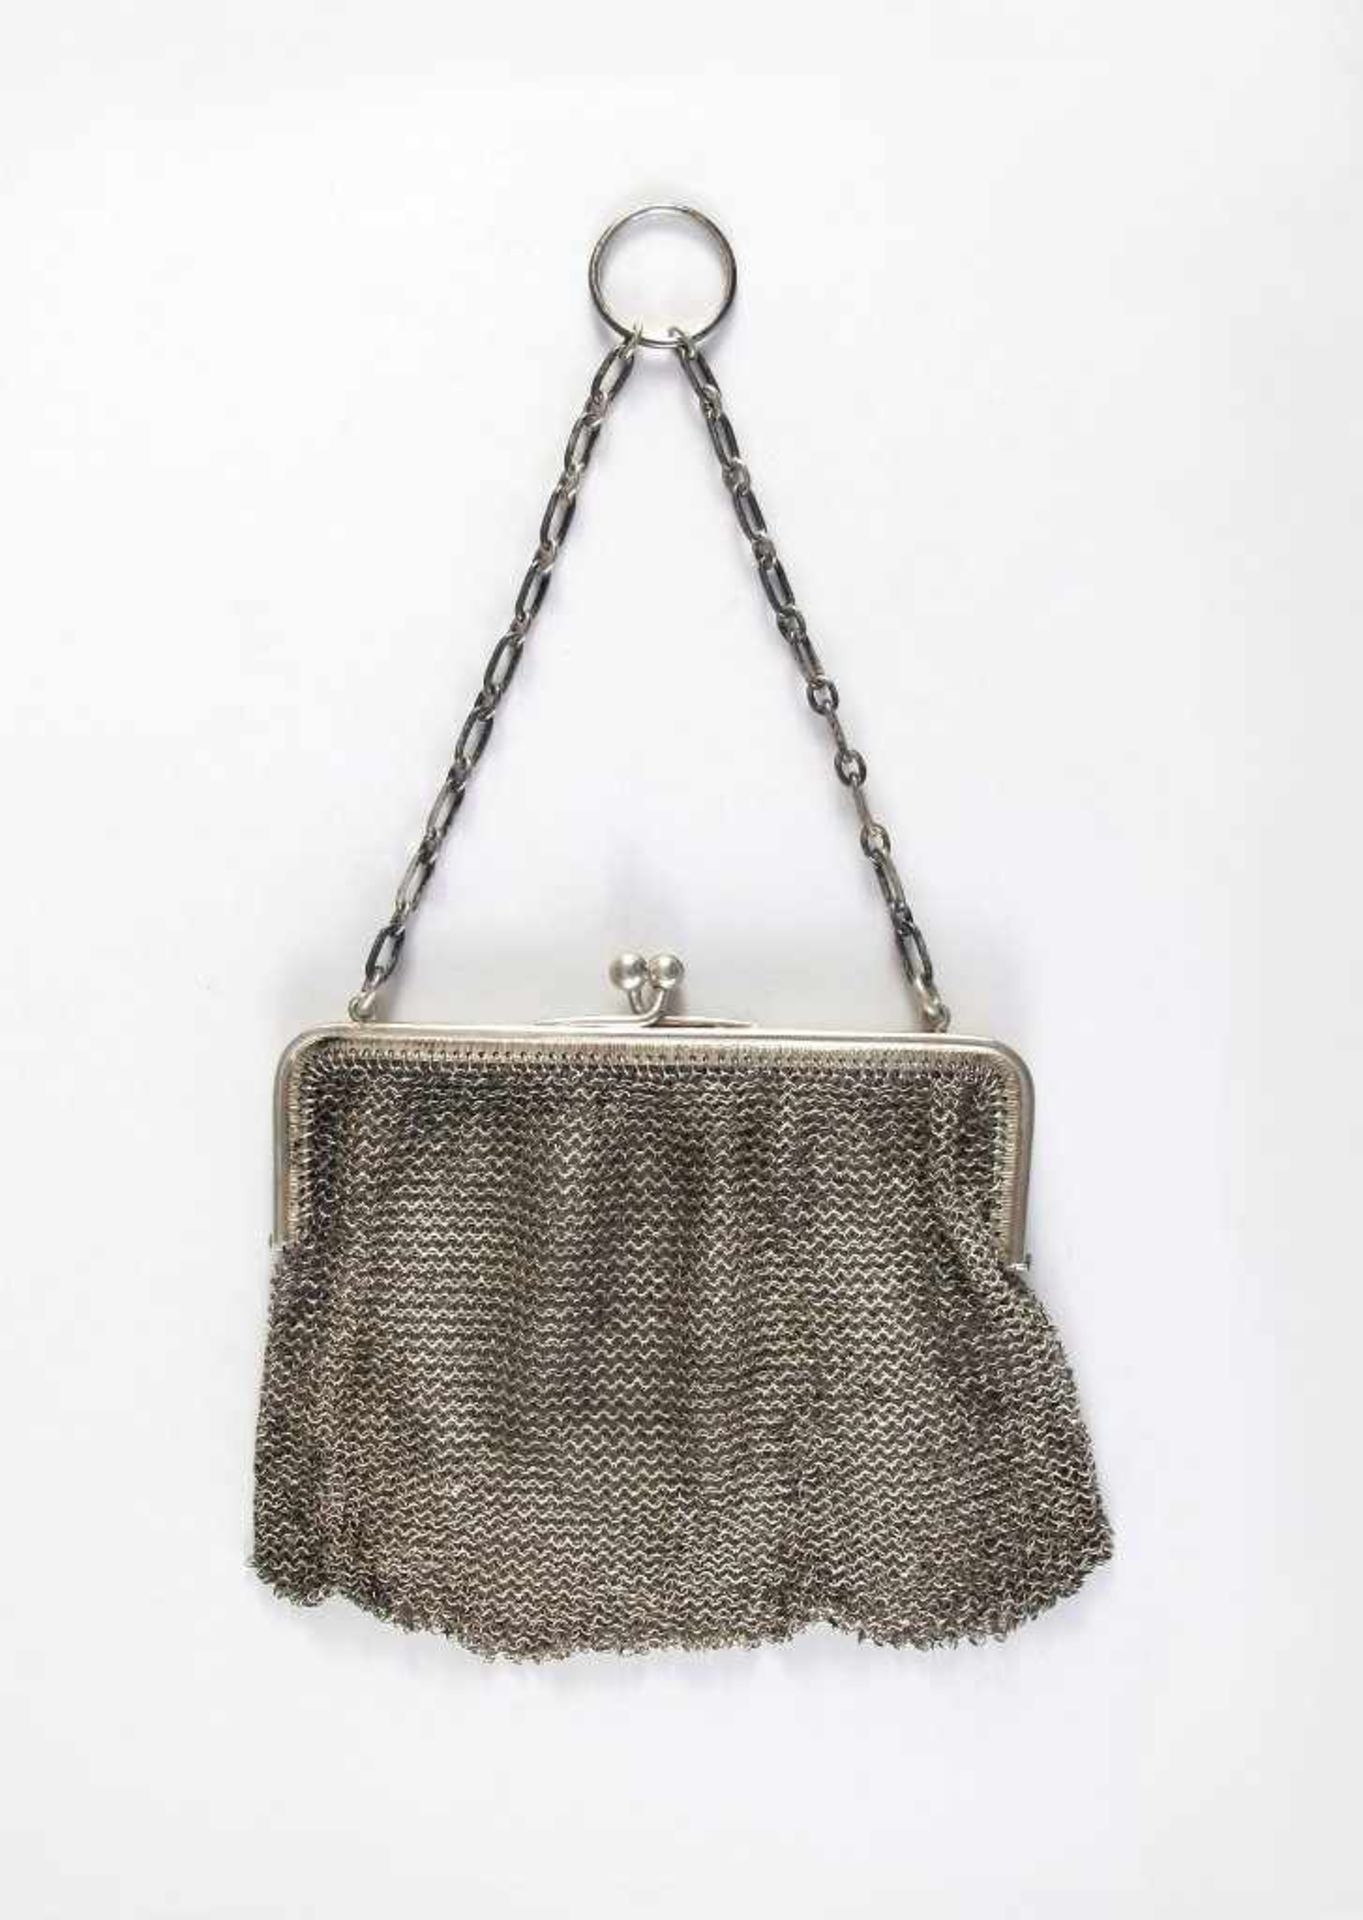 Kleine silberne Theatertasche mit Kettengeflecht. 106 g. 11 x 12 cm